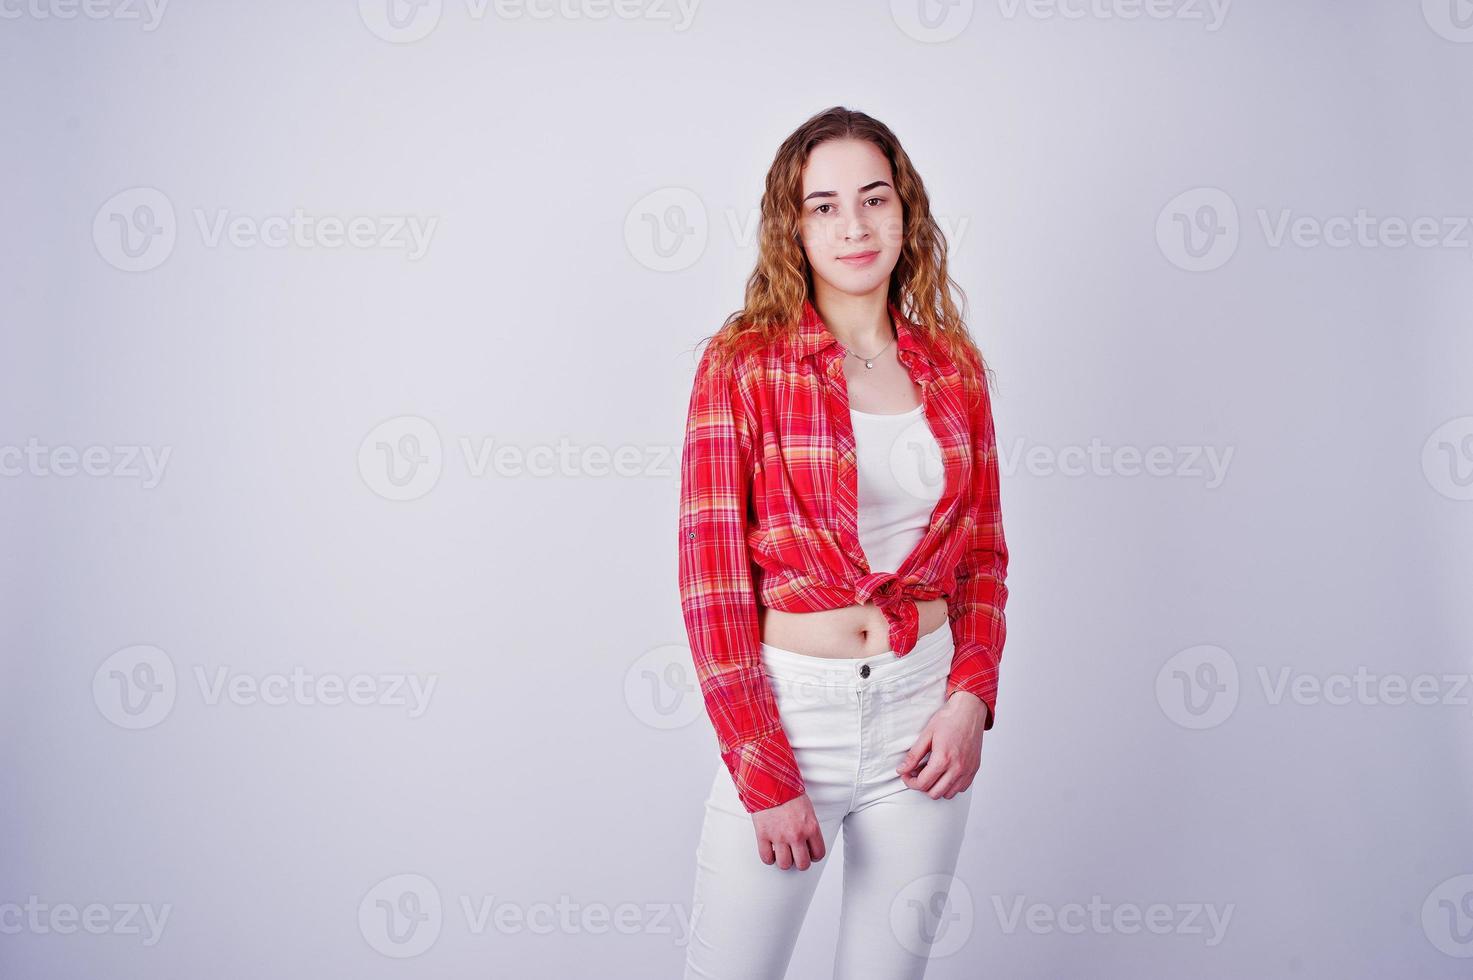 jovem de camisa vermelha e calça branca contra um fundo branco no estúdio. foto